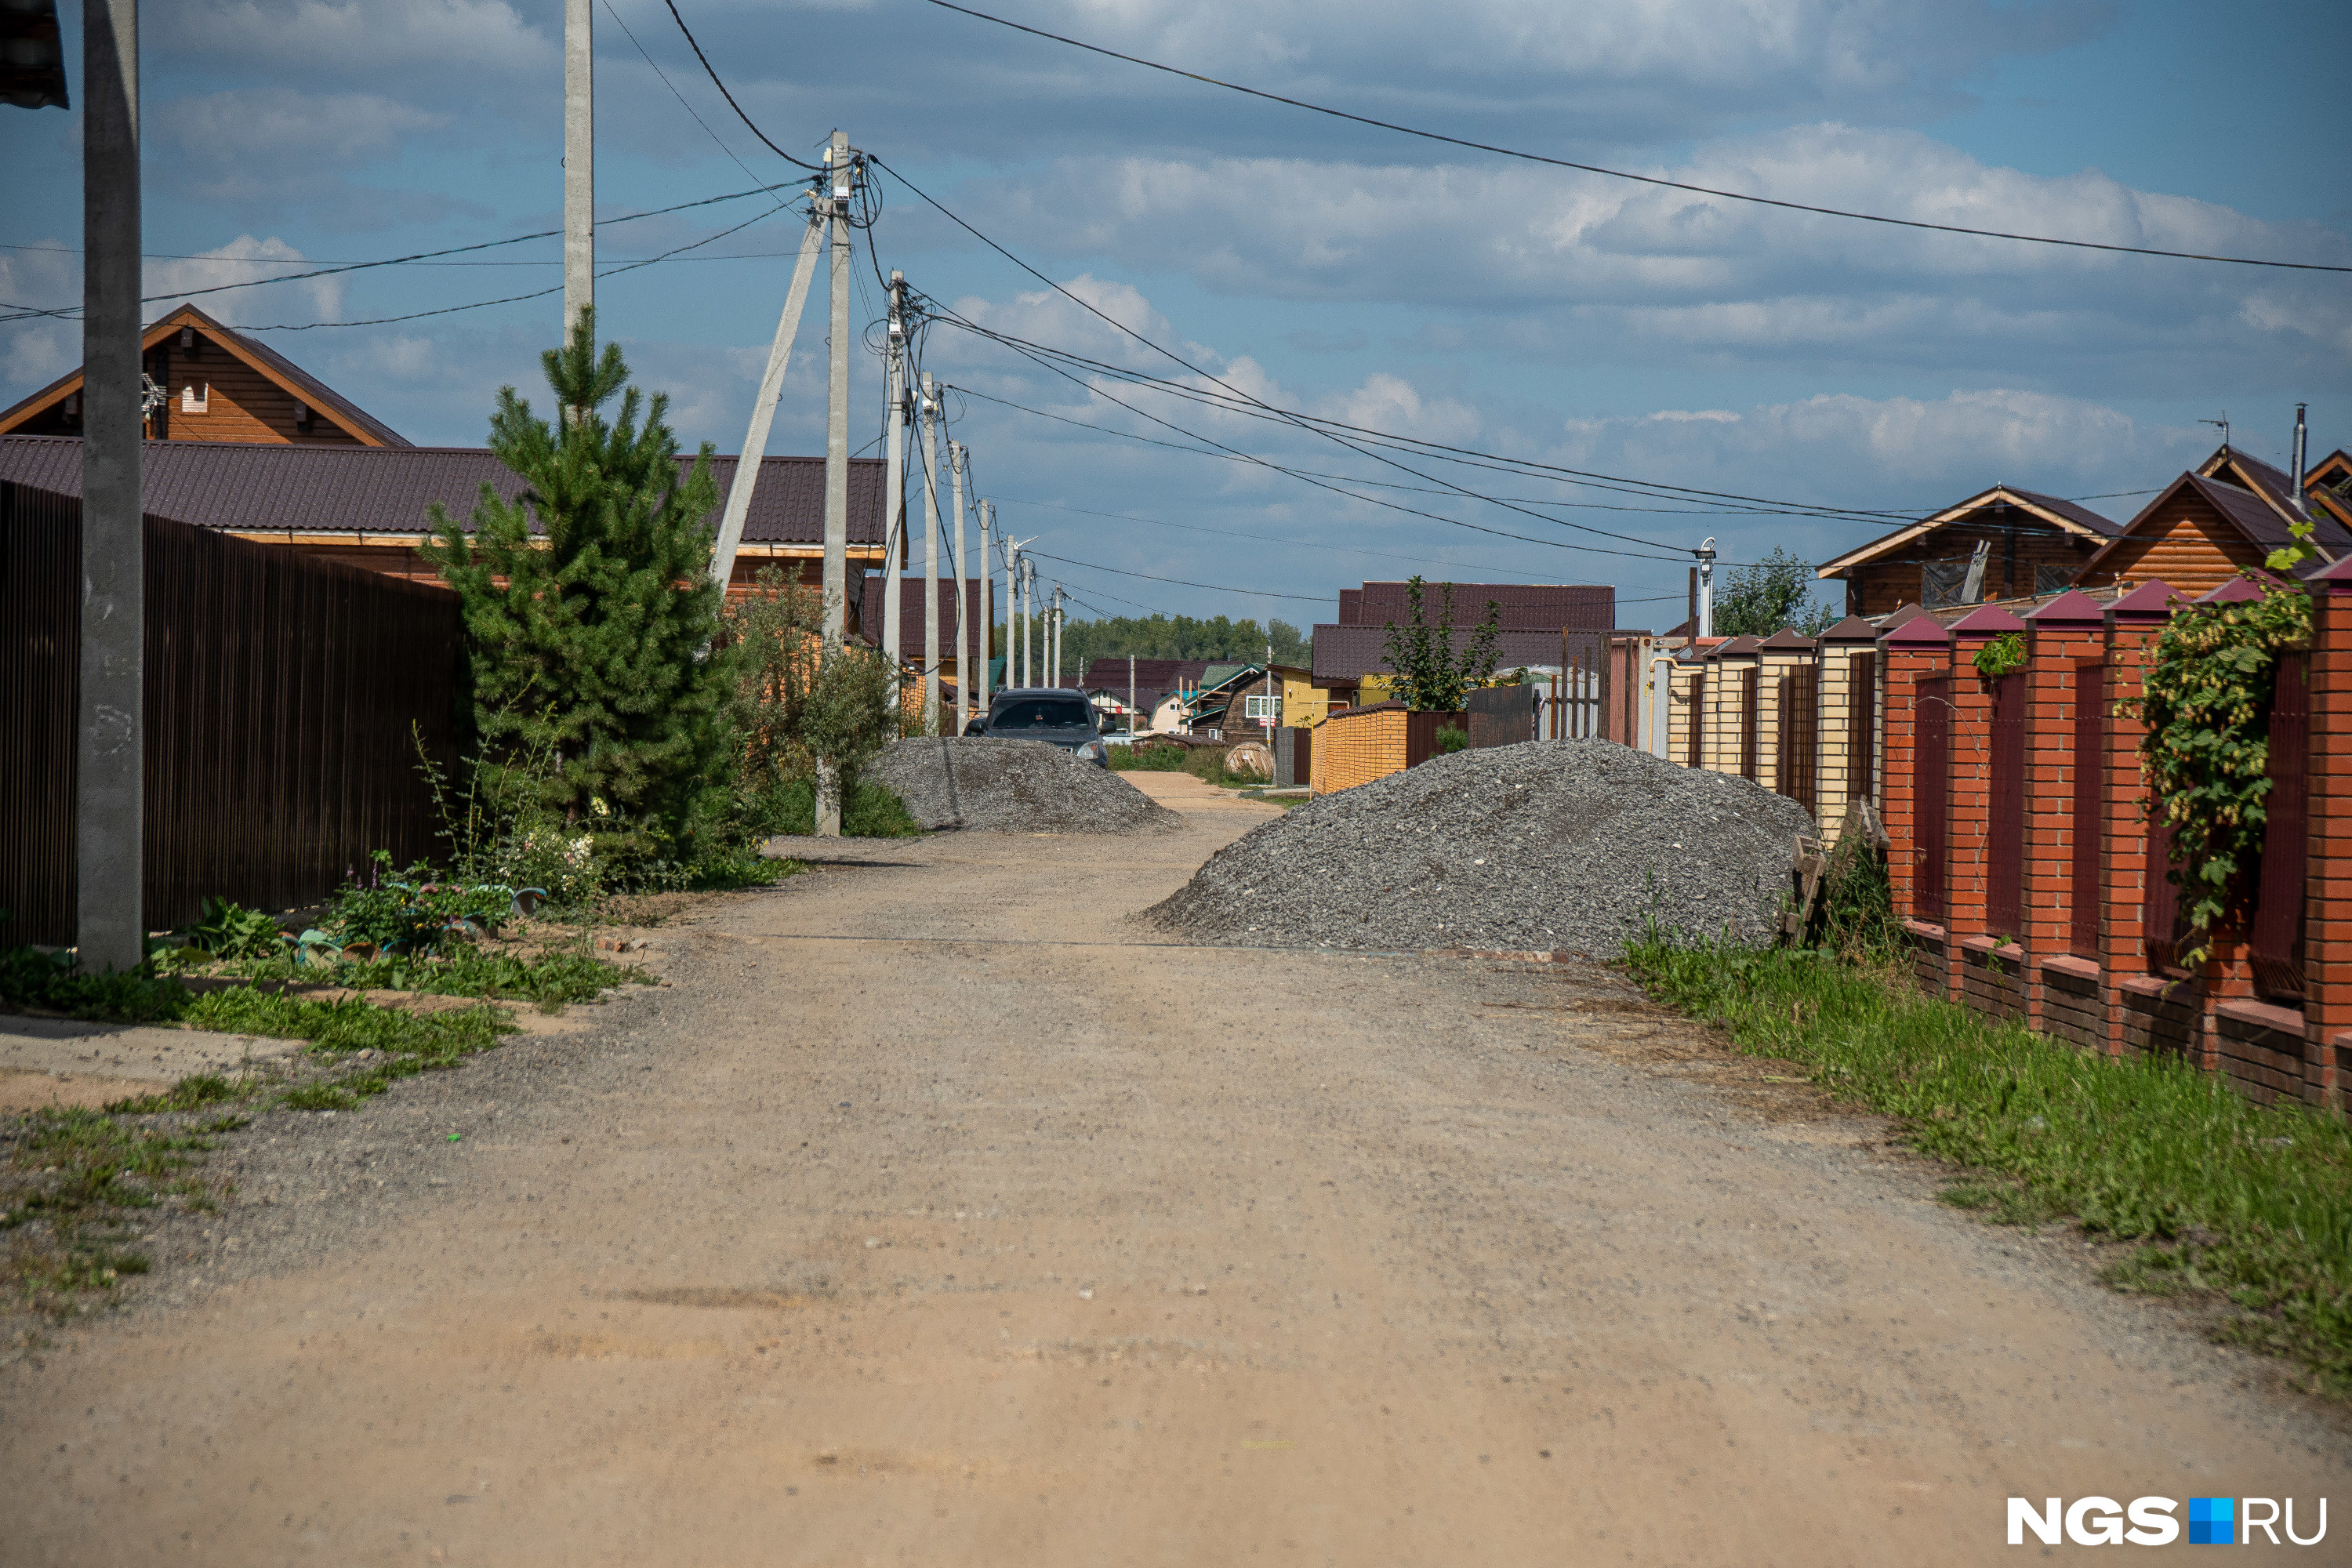 В краснояровских дачных поселках всё отлично с дорогами: в «Транспортнике» в этом году обновляют щебеночное покрытие...